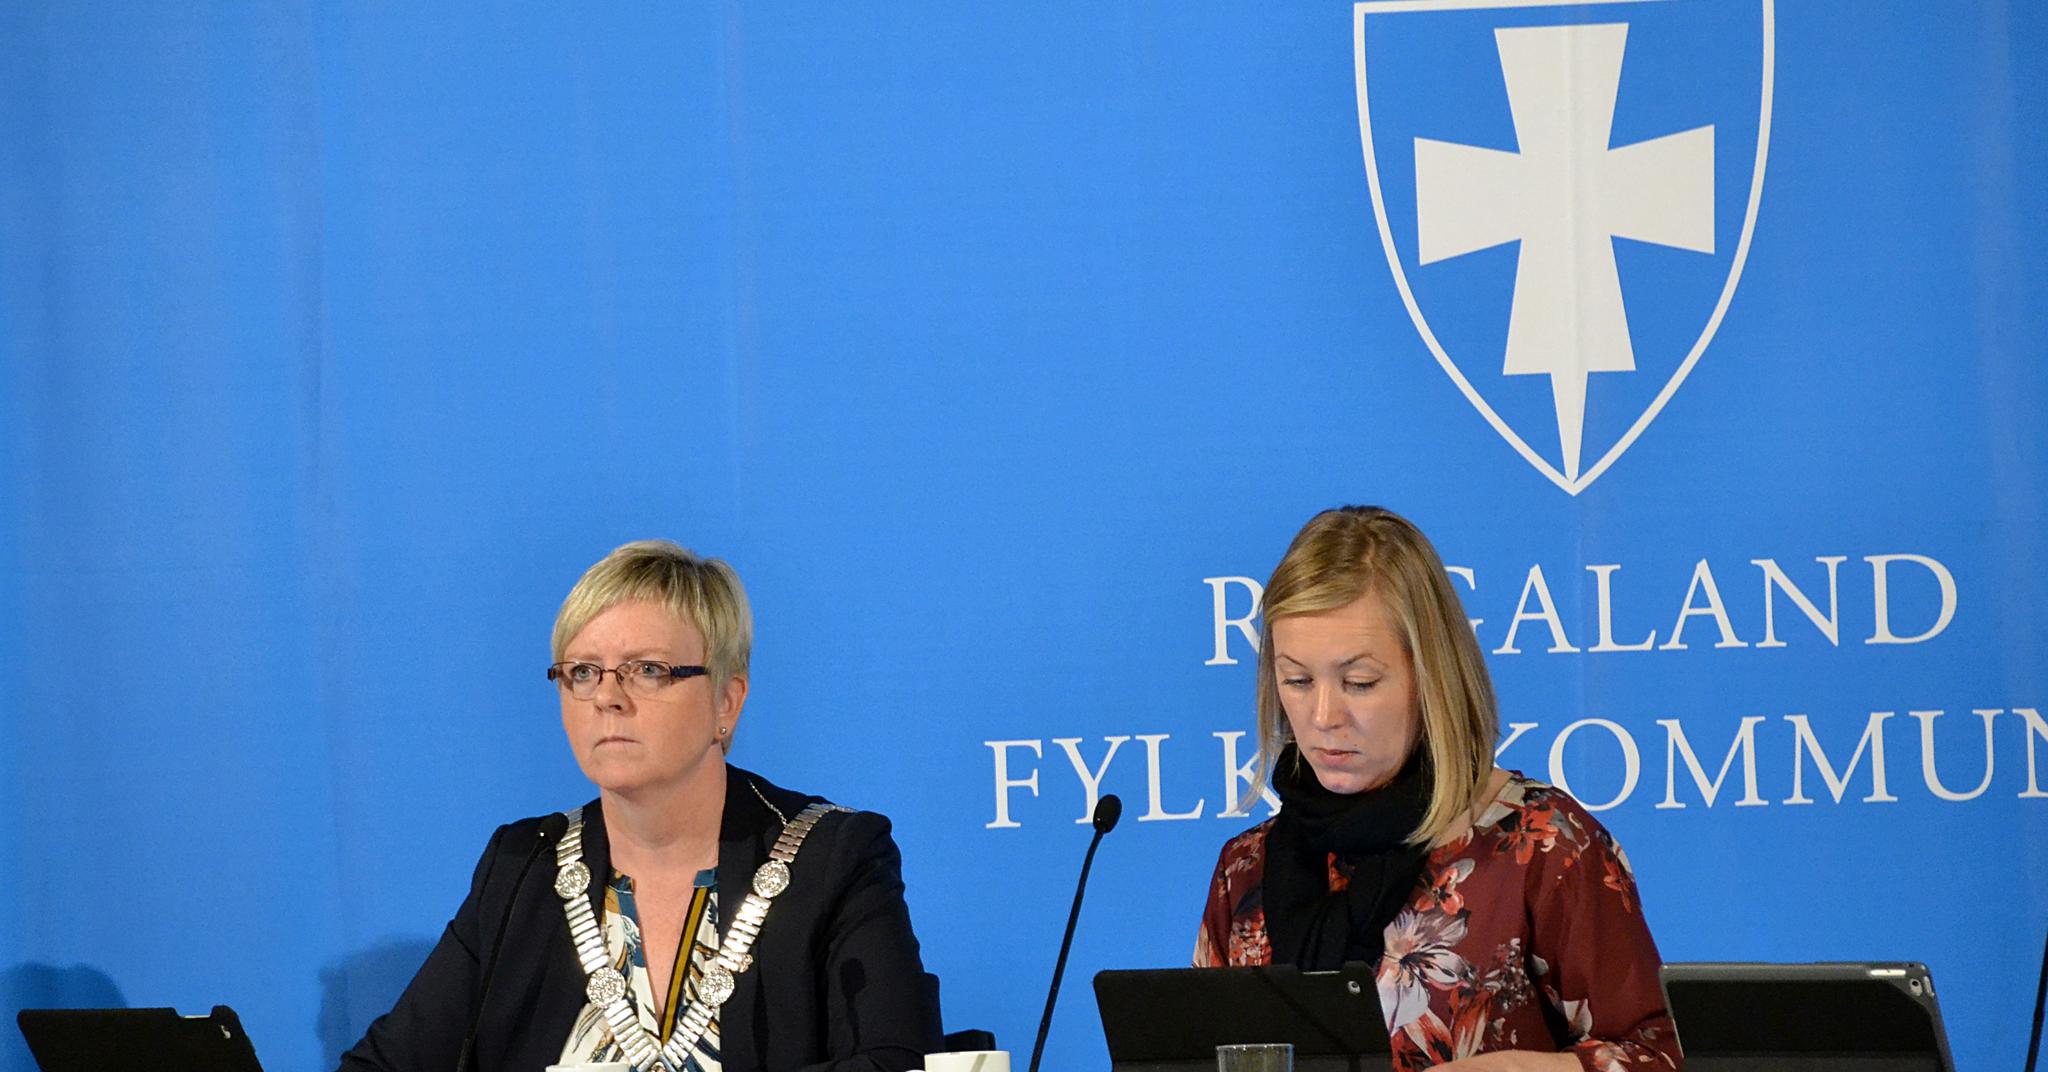 Fylkesordfører Solveig Ege Tengesdal (KrF), til venstre, og fylkesvaraordfører Marianne Chesak (Ap) kan få dekket bompenger til og fra sin daglige jobb i fylkeshuset i Stavanger.   De to har henholdsvis en lønn på over og rett under én million kroner i året.